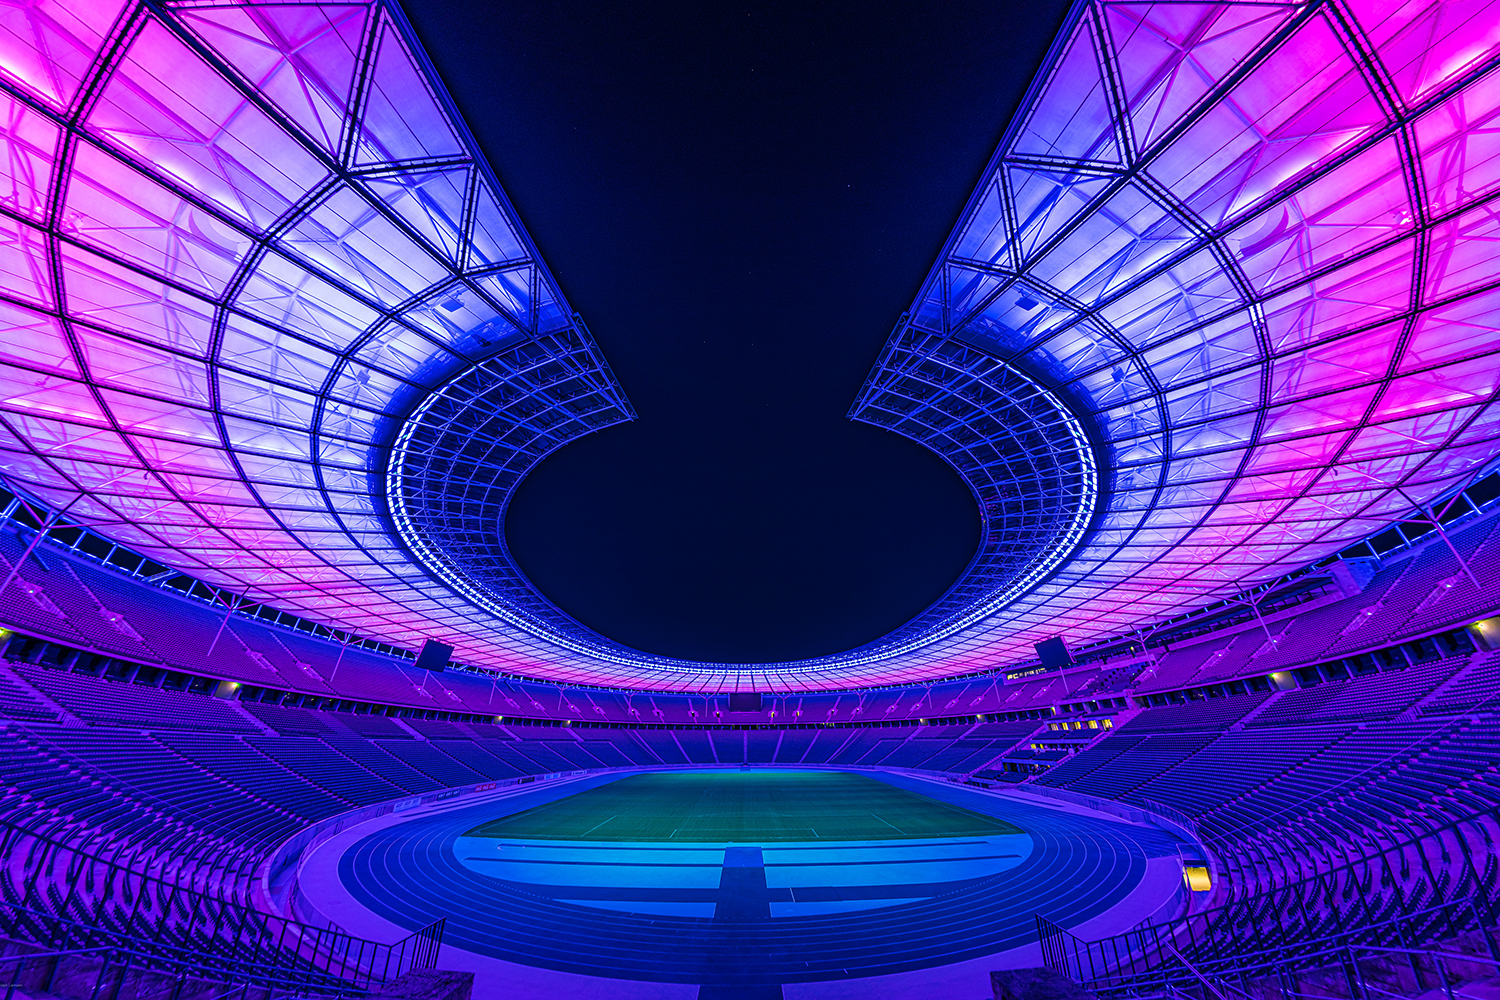 Das Olympiastadion zeigt eine spektakuläre Lichtershow bei der Lichterlebnis-Tour ab dem 18. September. Foto: Olympiastadion Berlin